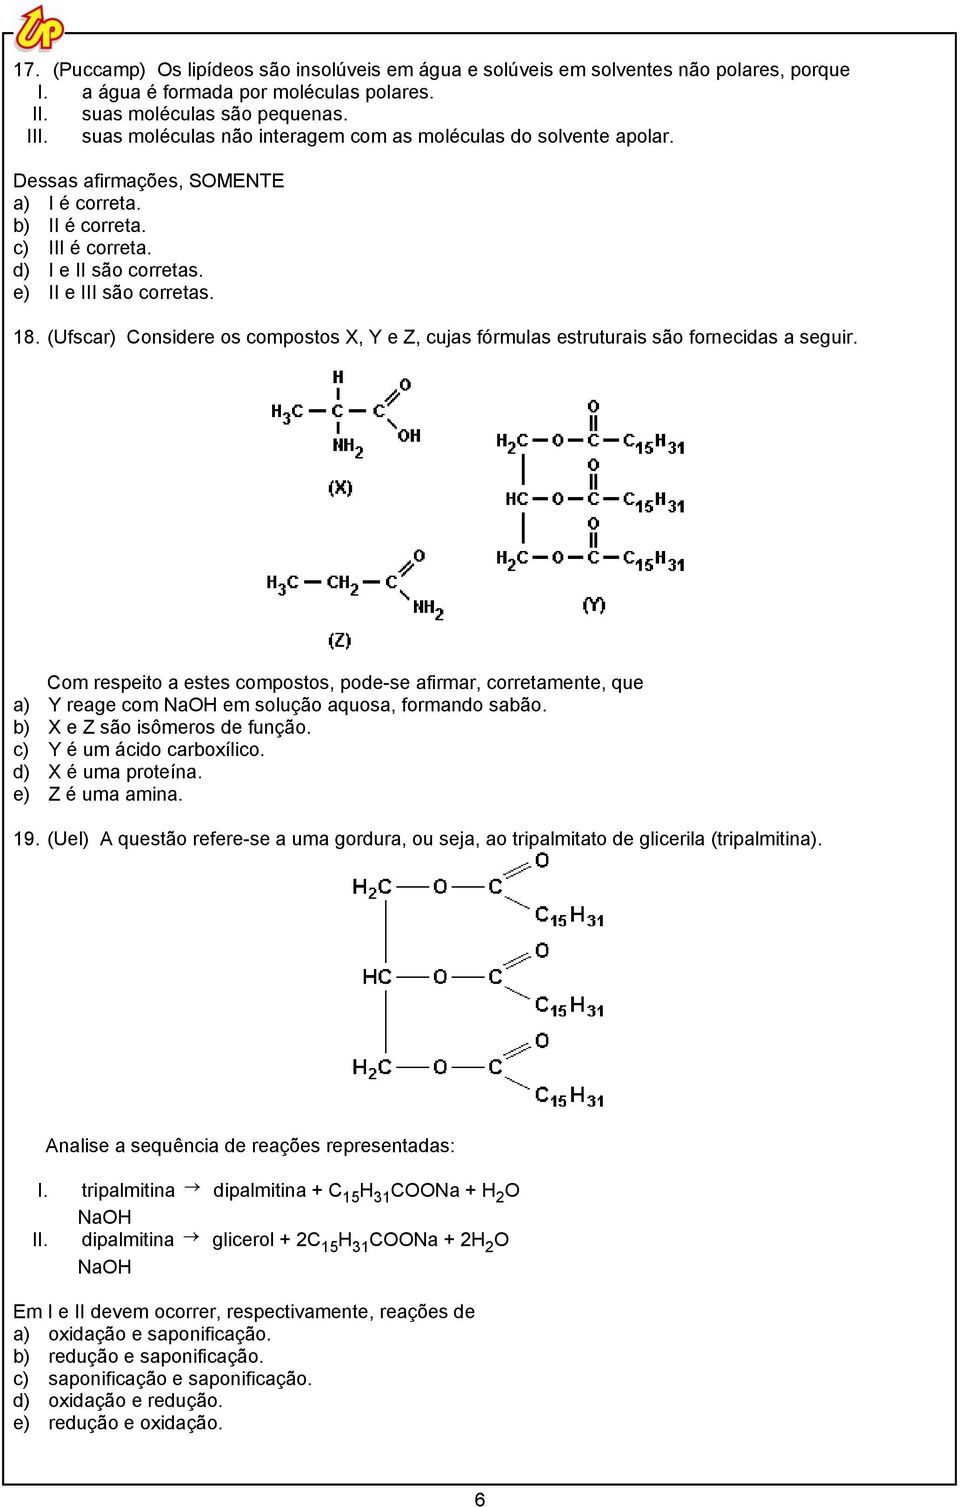 (Ufscar) Considere os compostos X, Y e Z, cujas fórmulas estruturais são fornecidas a seguir.